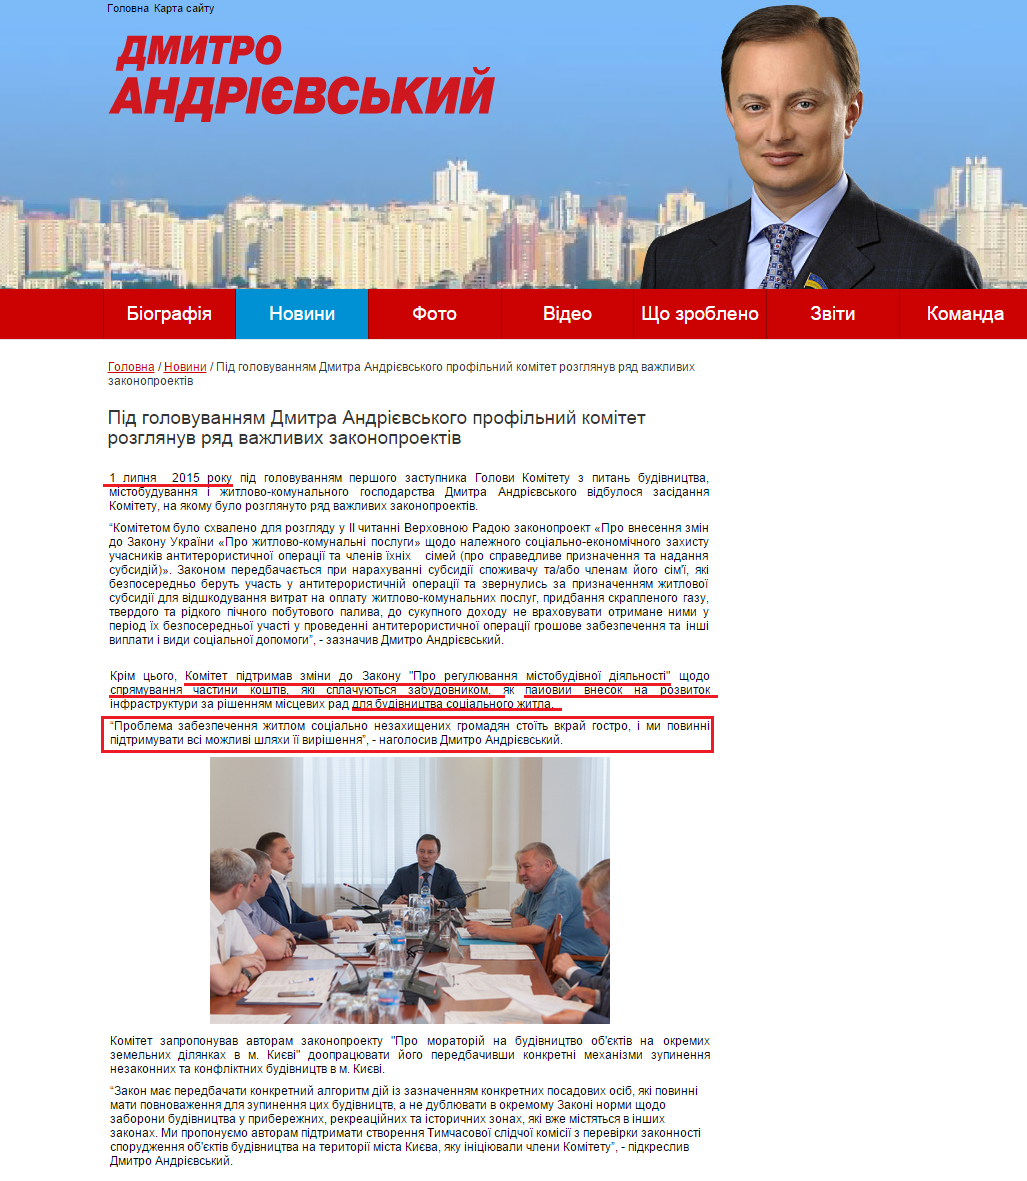 http://www.andrievsky.kiev.ua/news/p-d-golovuvanniam-dmitra-andr-vskogo-prof-lnii-kom-tet-rozglianuv-riad-vazhlivikh-zakonoproekt-v